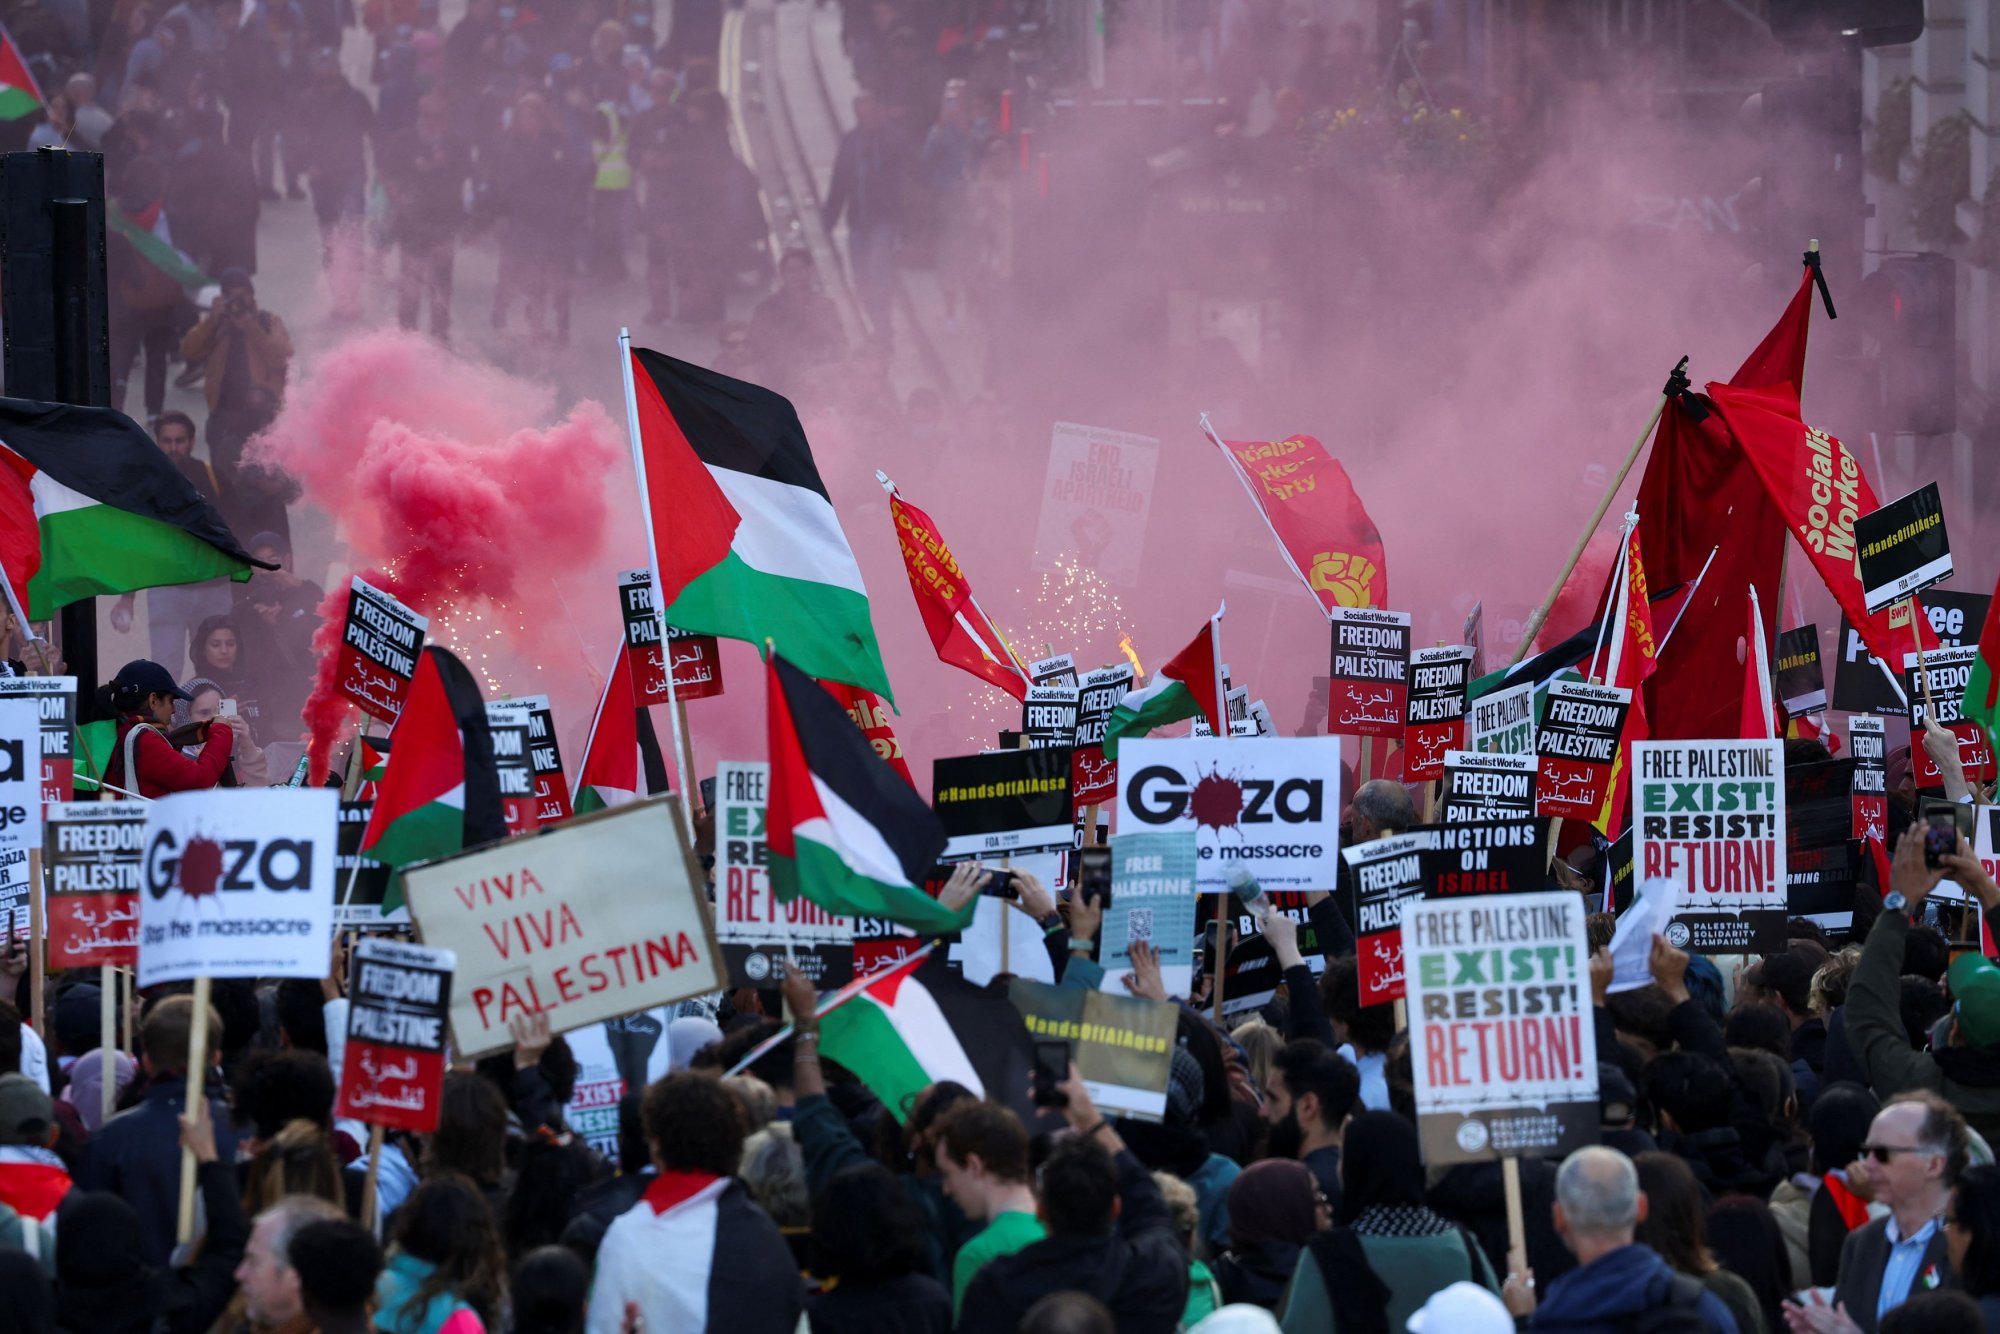 Λαοθάλασσα υπέρ της Παλαιστίνης στο Λονδίνο - «Είναι μέρα αλληλεγγύης» (φωτογραφίες+βίντεο)